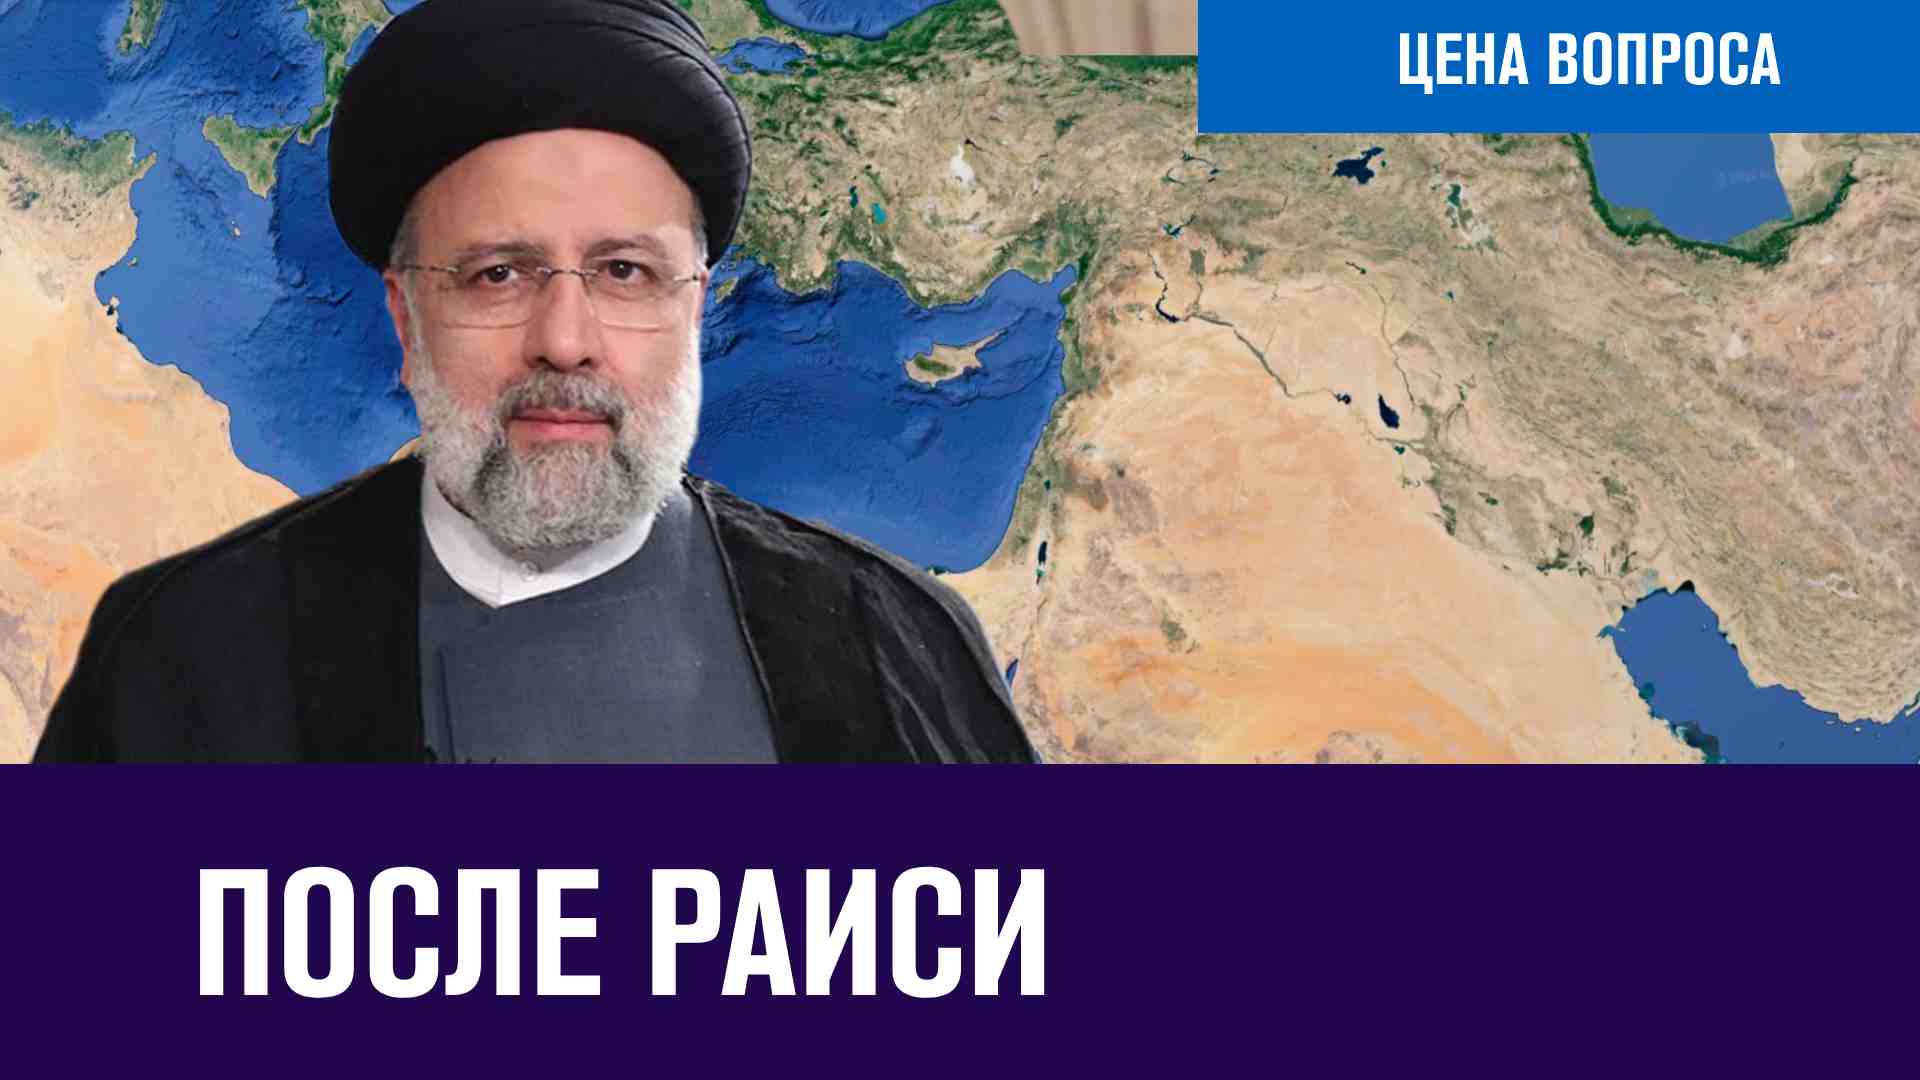 Почему погиб Раиси и что будет с Ираном - Цена Вопроса/Москва FM